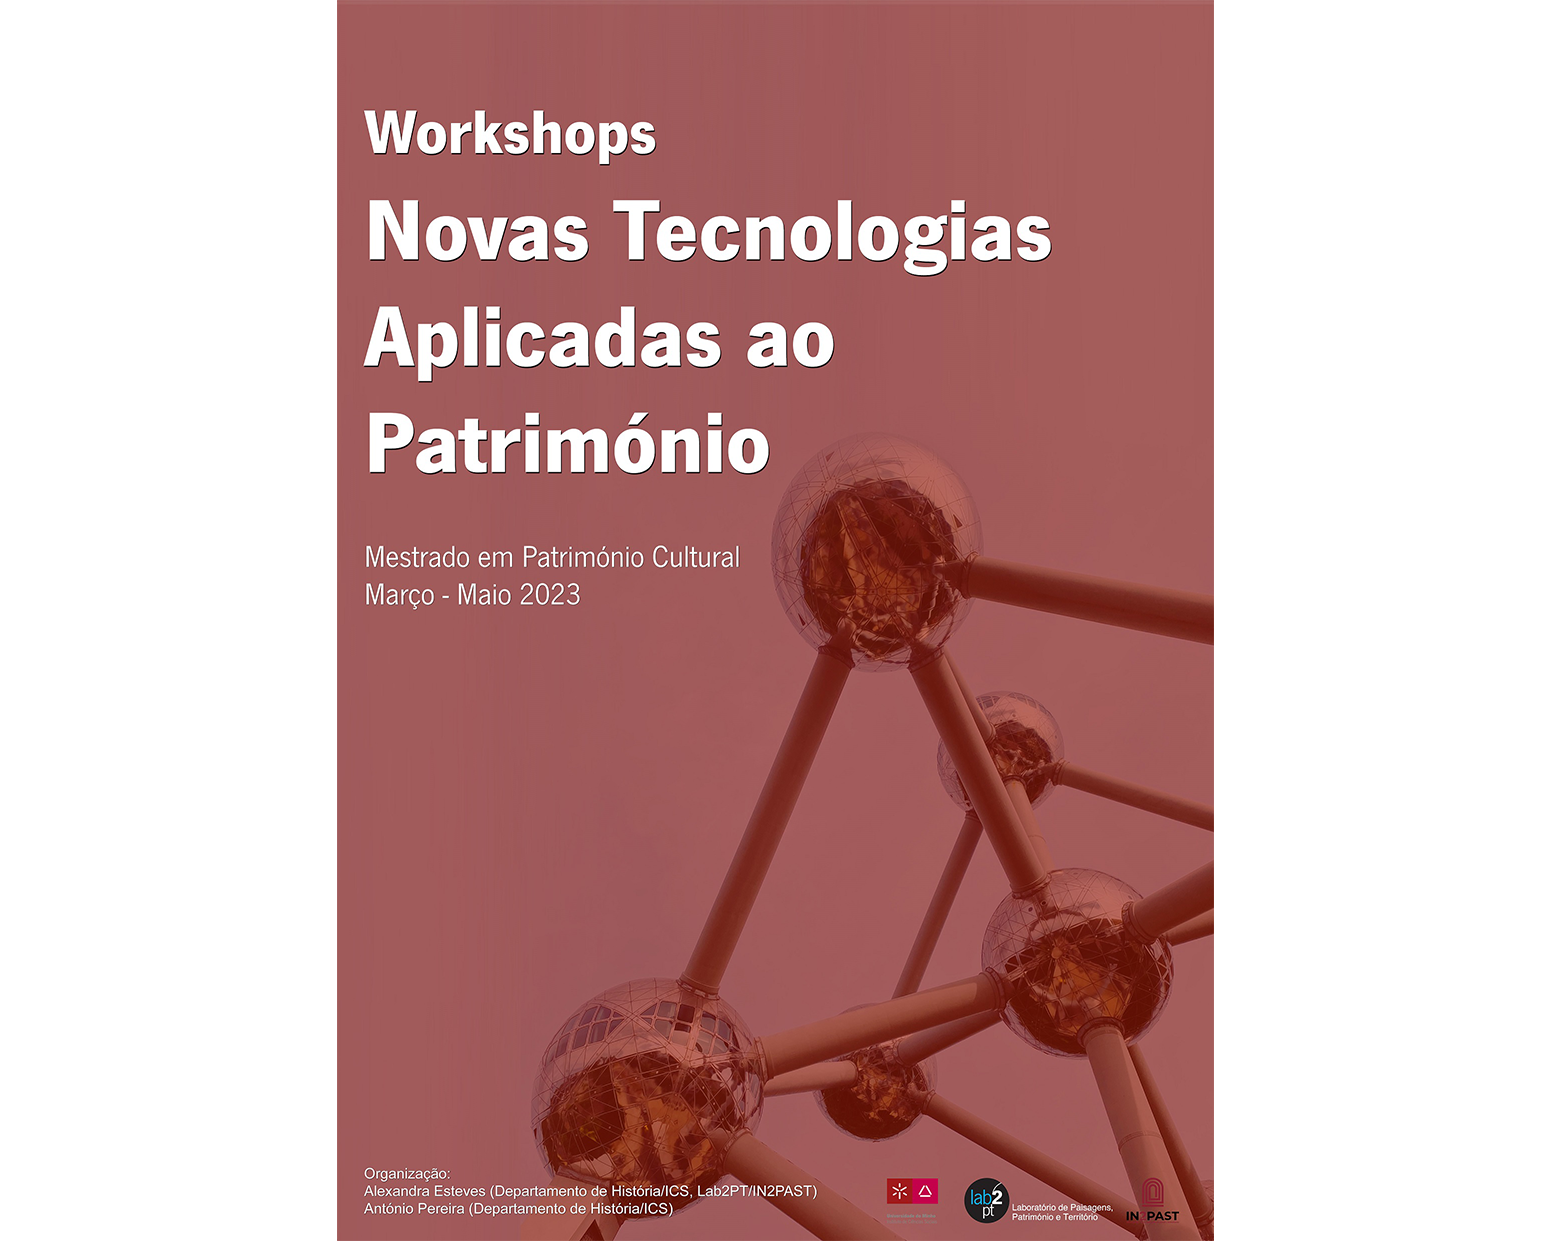 Workshops Novas Tecnologias Aplicadas ao Património image